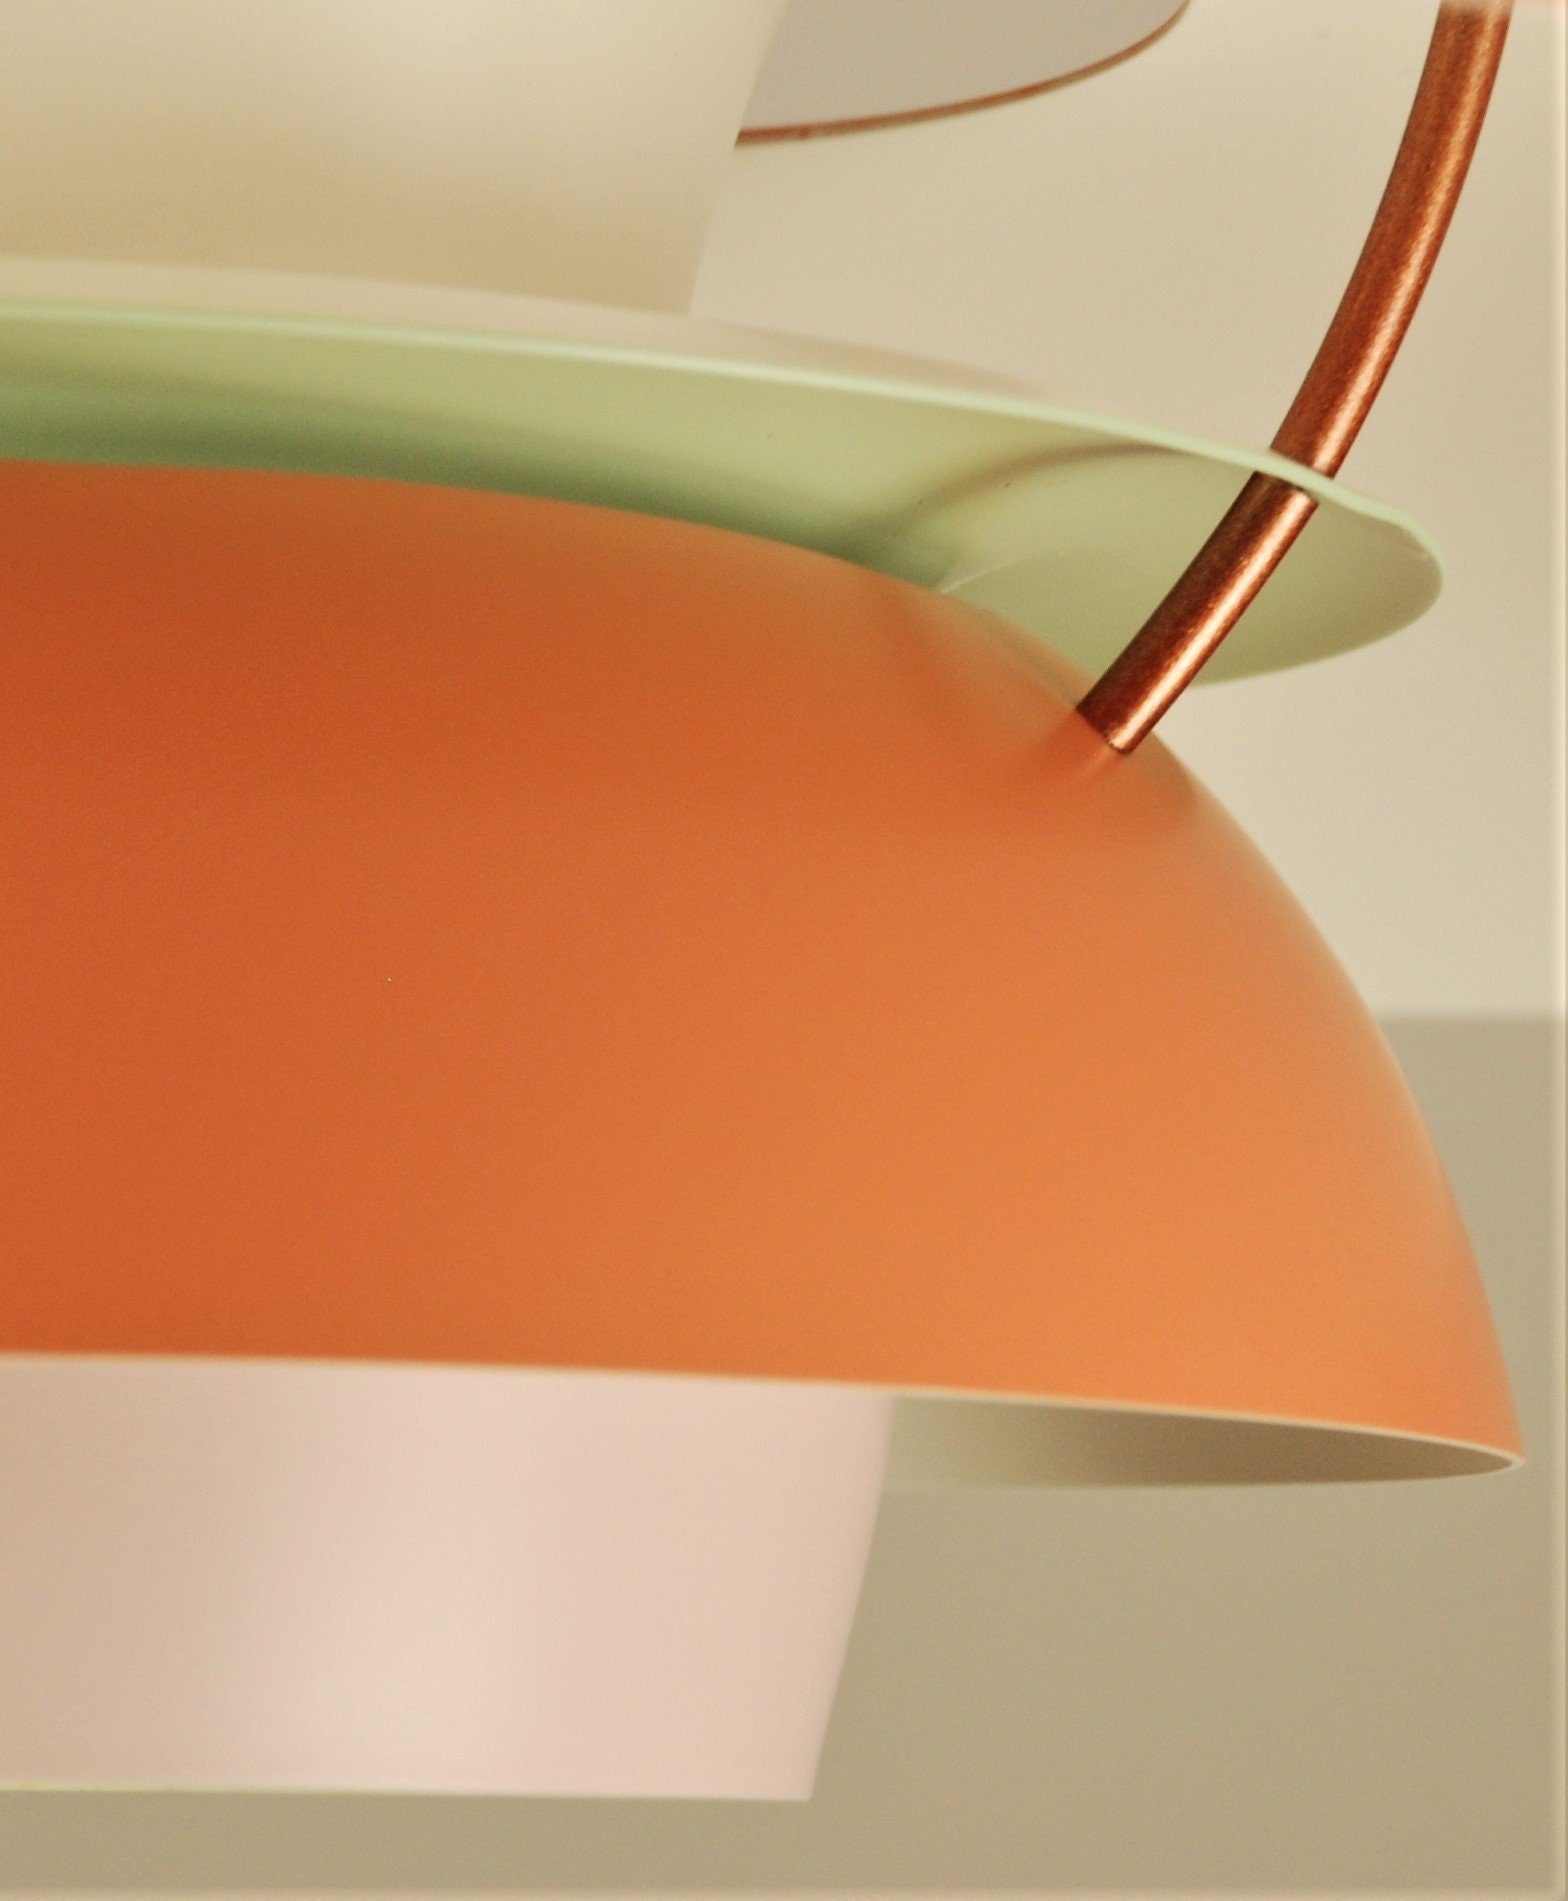 Vintage Louis Poulsen PH5 Pendant Lamp | Original Vintage Restored in 'Red/Orange/Light Pink' or choose your custom color! - FancyVintage.nl -